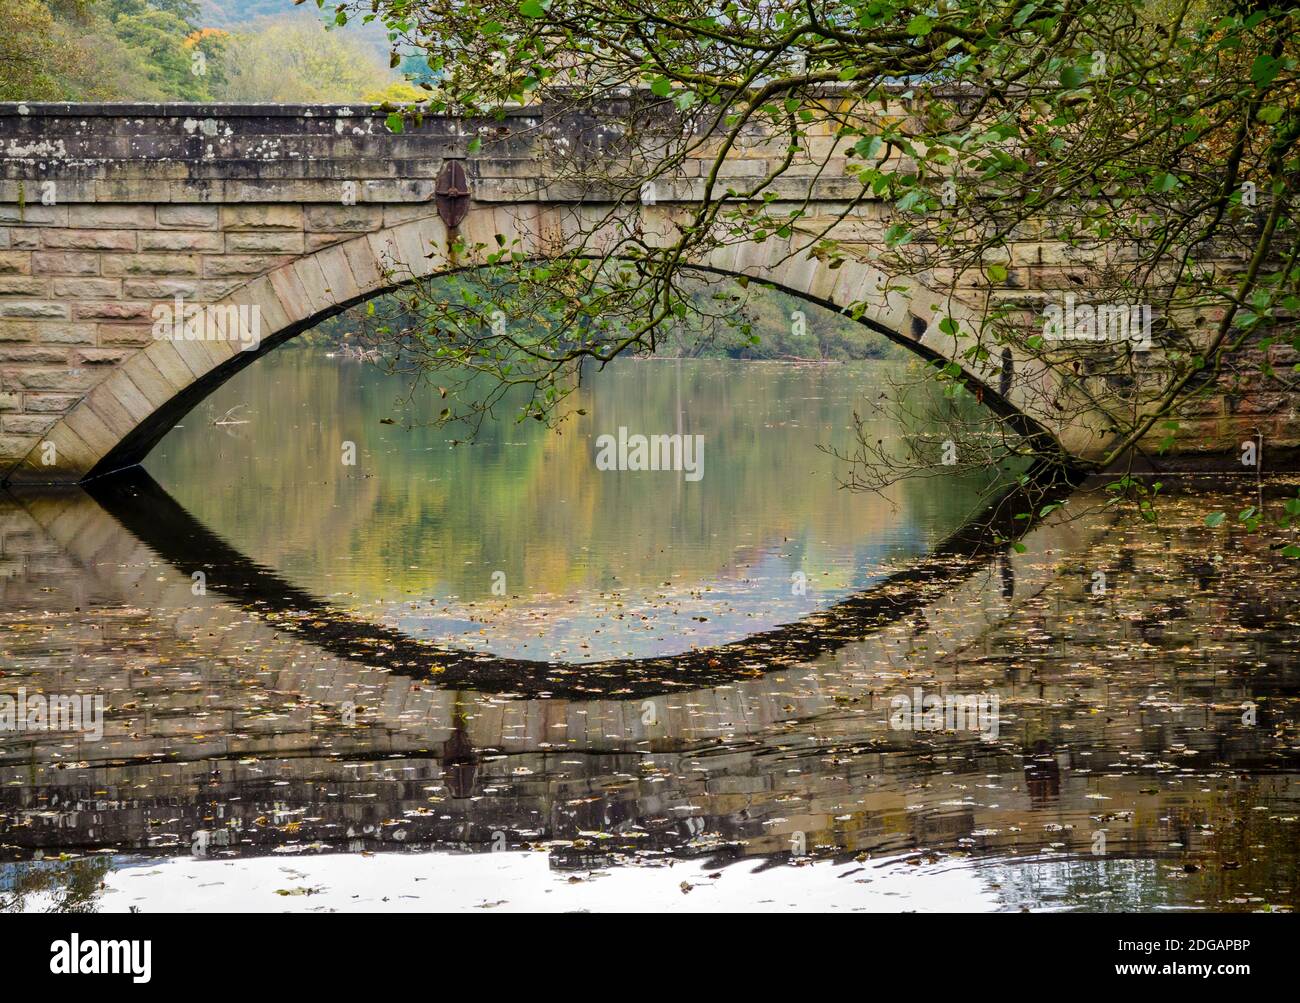 Pont reflété dans les eaux calmes de la rivière Derwent Près de Froggatt dans le parc national de Peak District Derbyshire England ROYAUME-UNI Banque D'Images